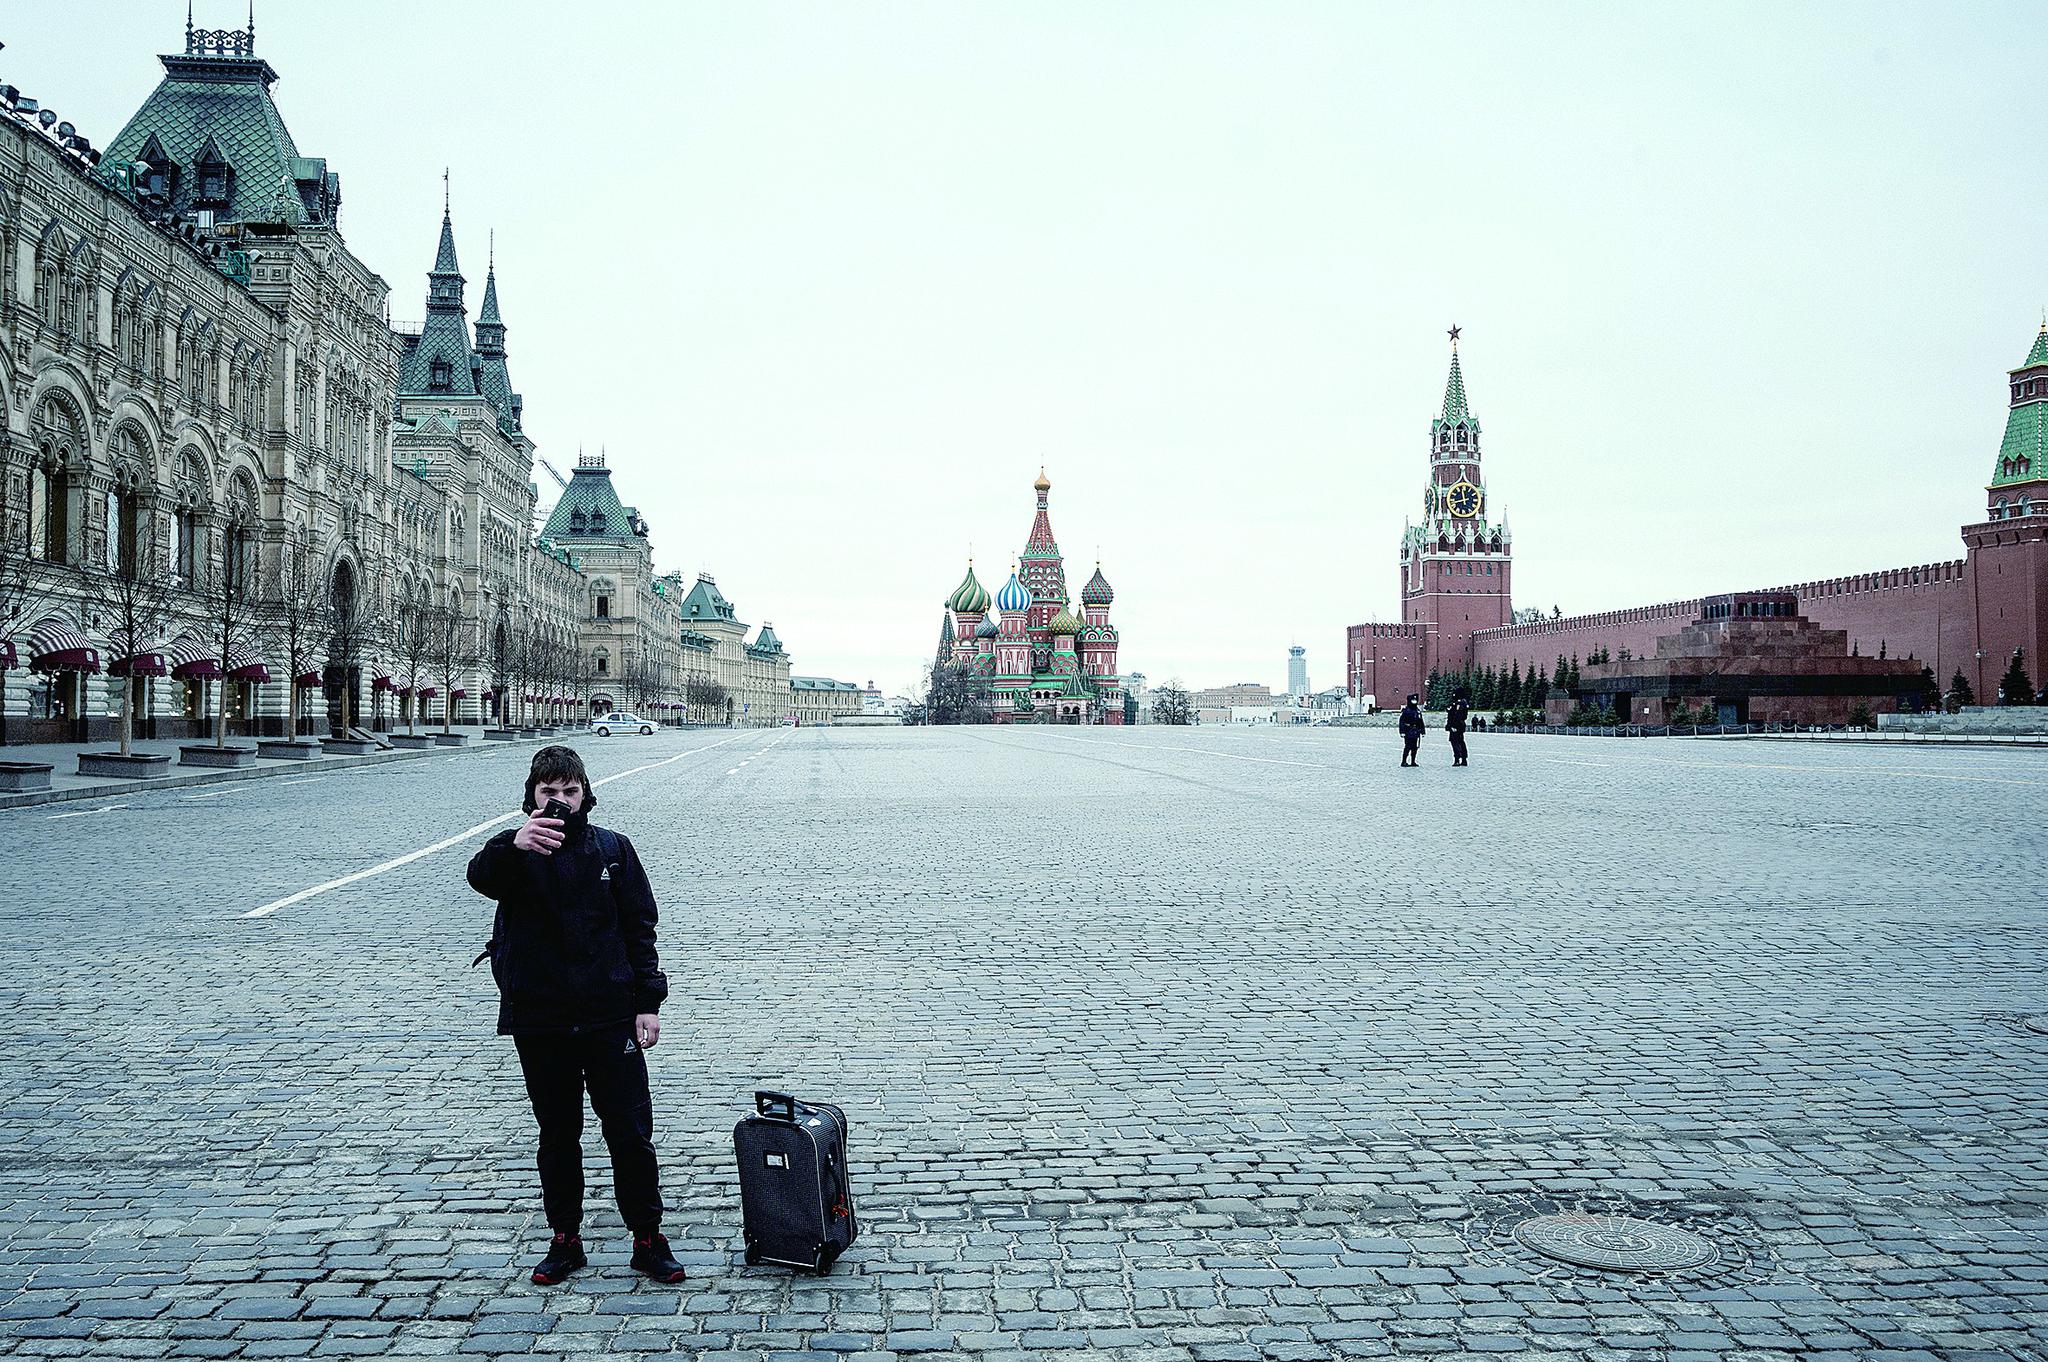 30日，一名游客在空旷的莫斯科红场上拍照。莫斯科要求市民从当天开始待在家中，俄总 统普京呼吁莫斯科民众以严肃和负责任的态度对待这一普遍隔离措施。